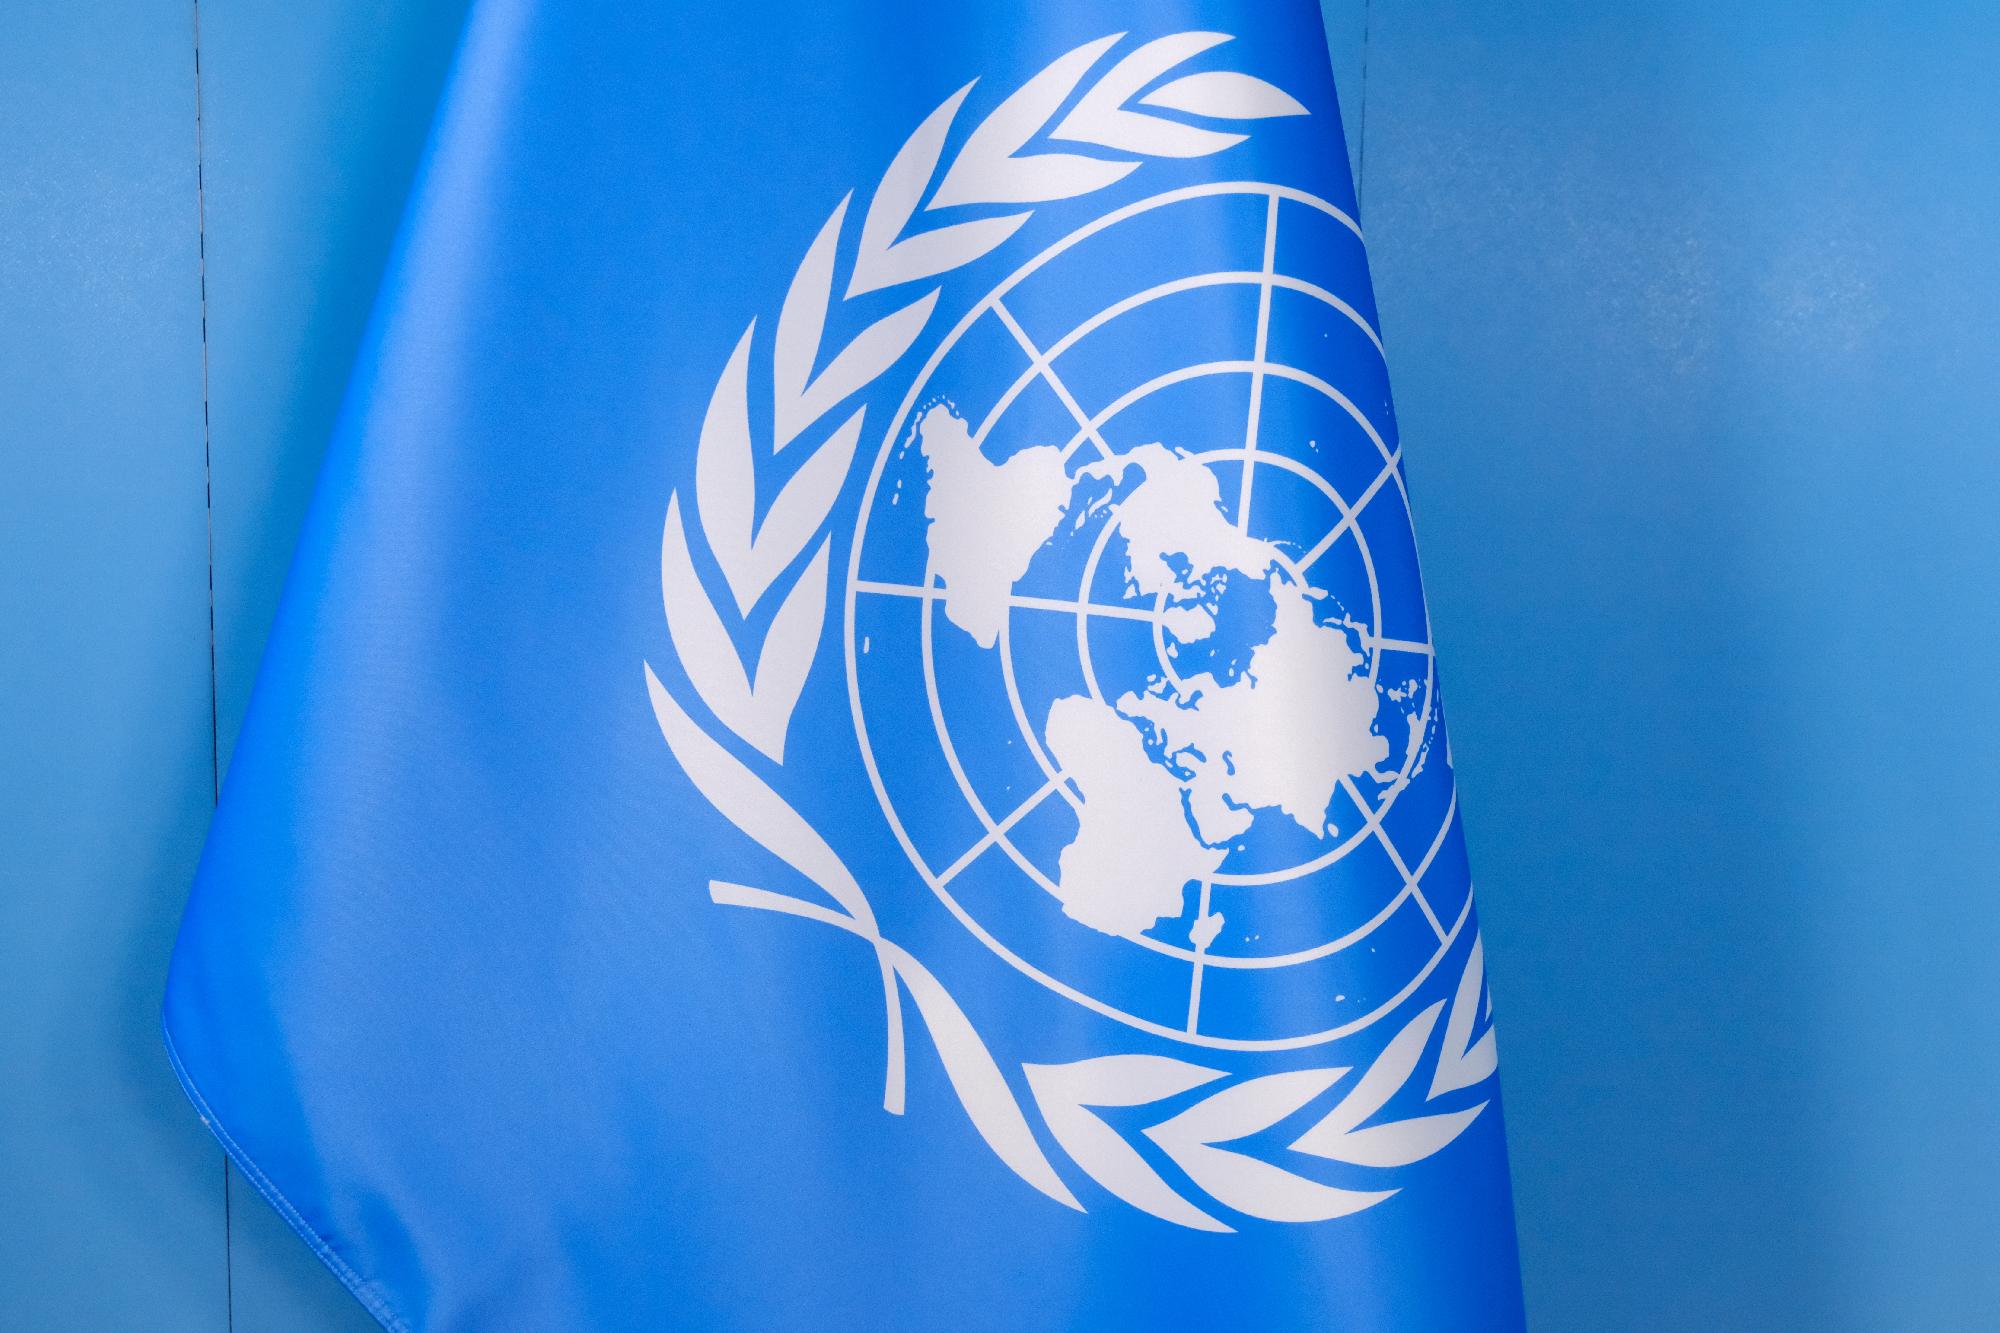 ENSZ-főtitkár: Tényleges humanitárius tűzszünetre van szükség a Gázai övezetben